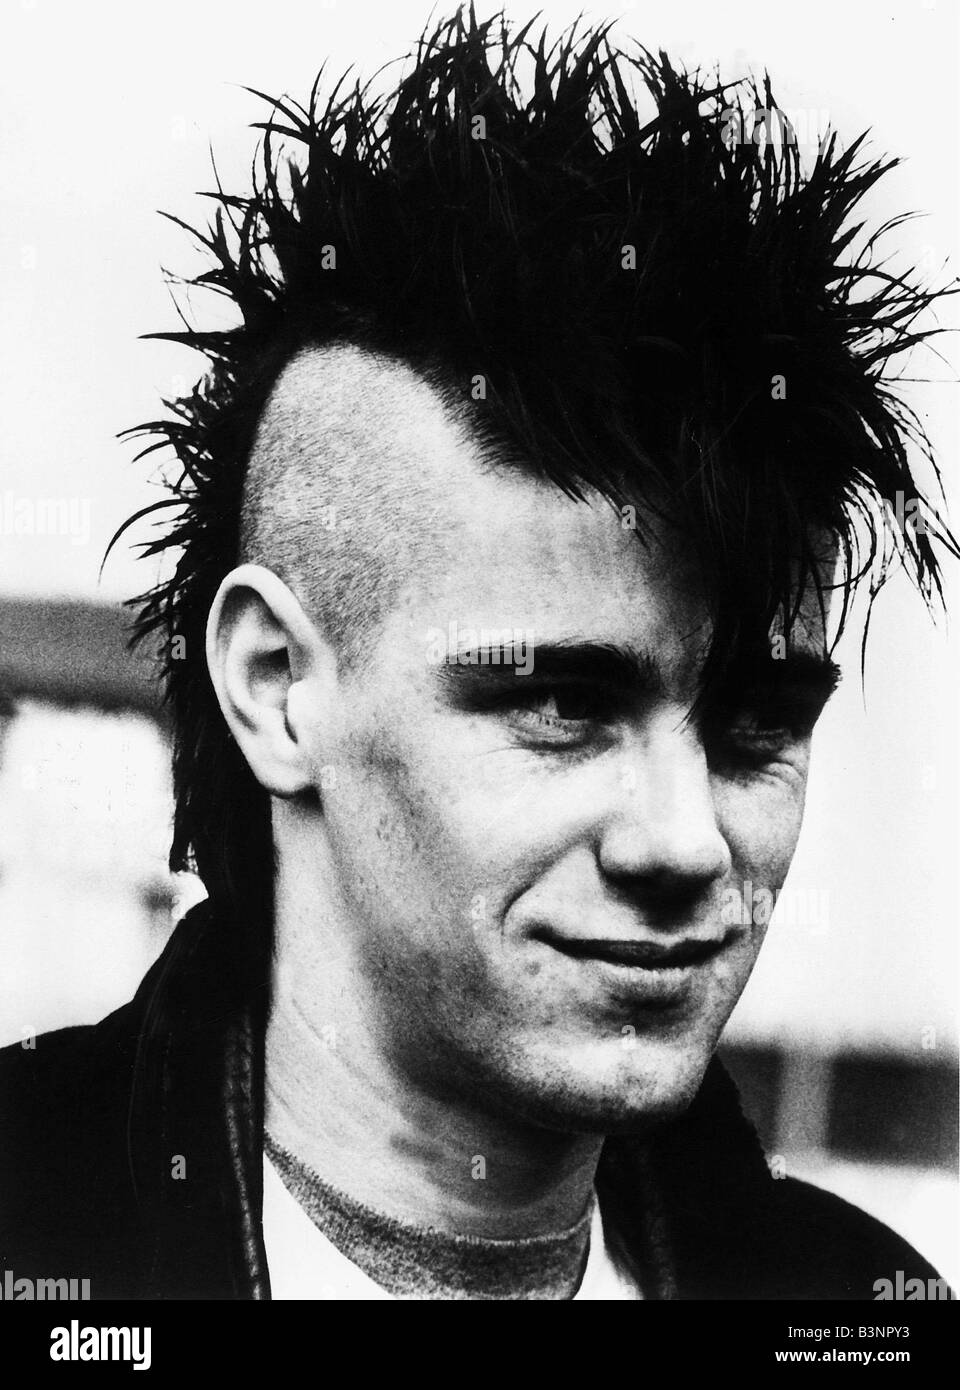 Andrew Askins étudiant en géographie de Penrith Avril 1983 coupe Mohican punk rocker Banque D'Images